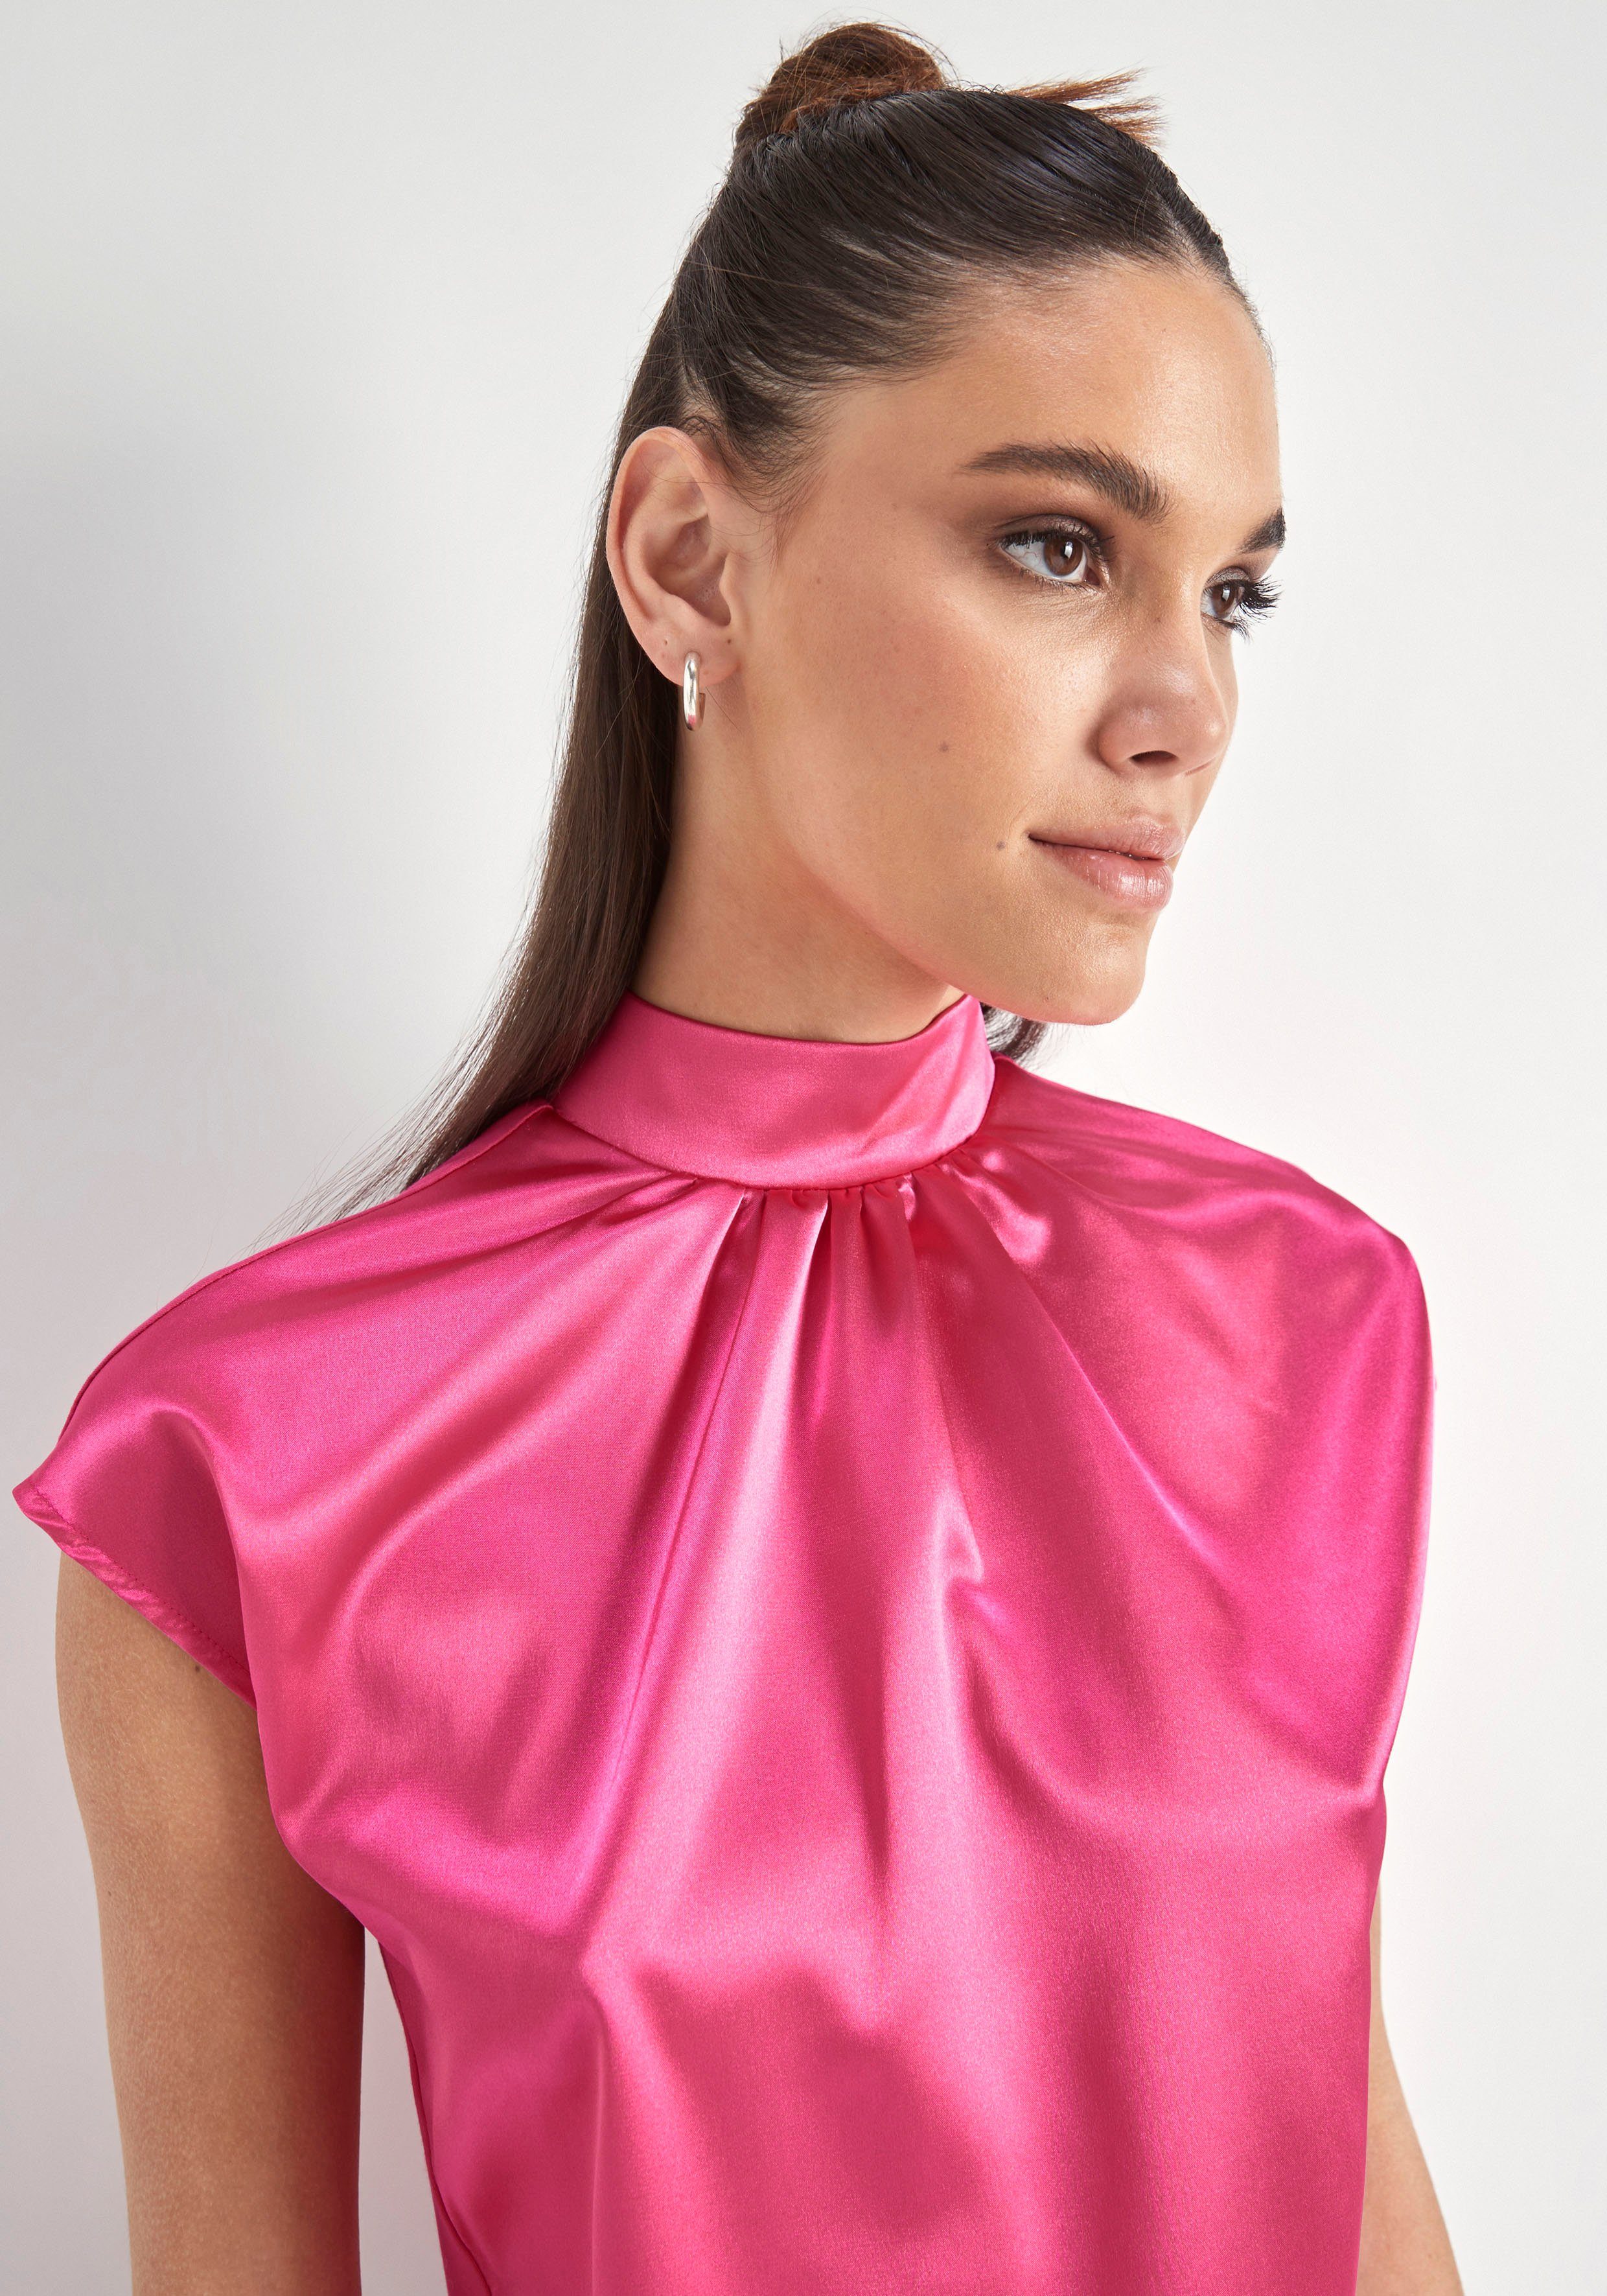 HECHTER PARIS Blusentop pink hochwertigem aus Material